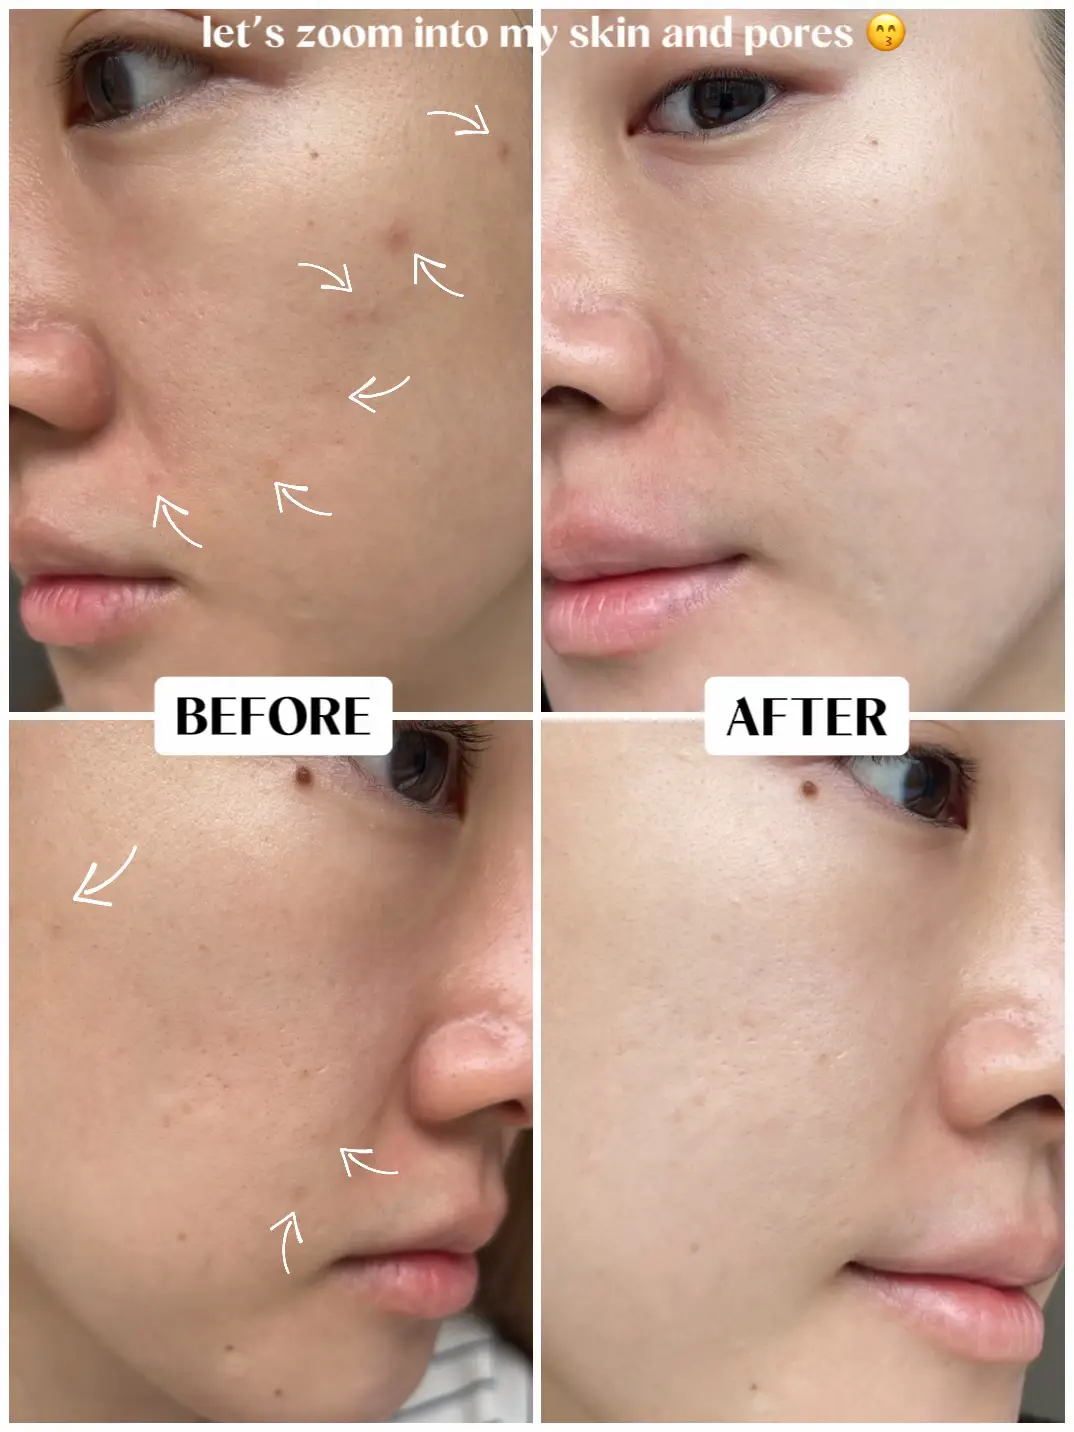 Pico Laser after 2 wks⚡️ Let’s talk skin treatments's images(8)